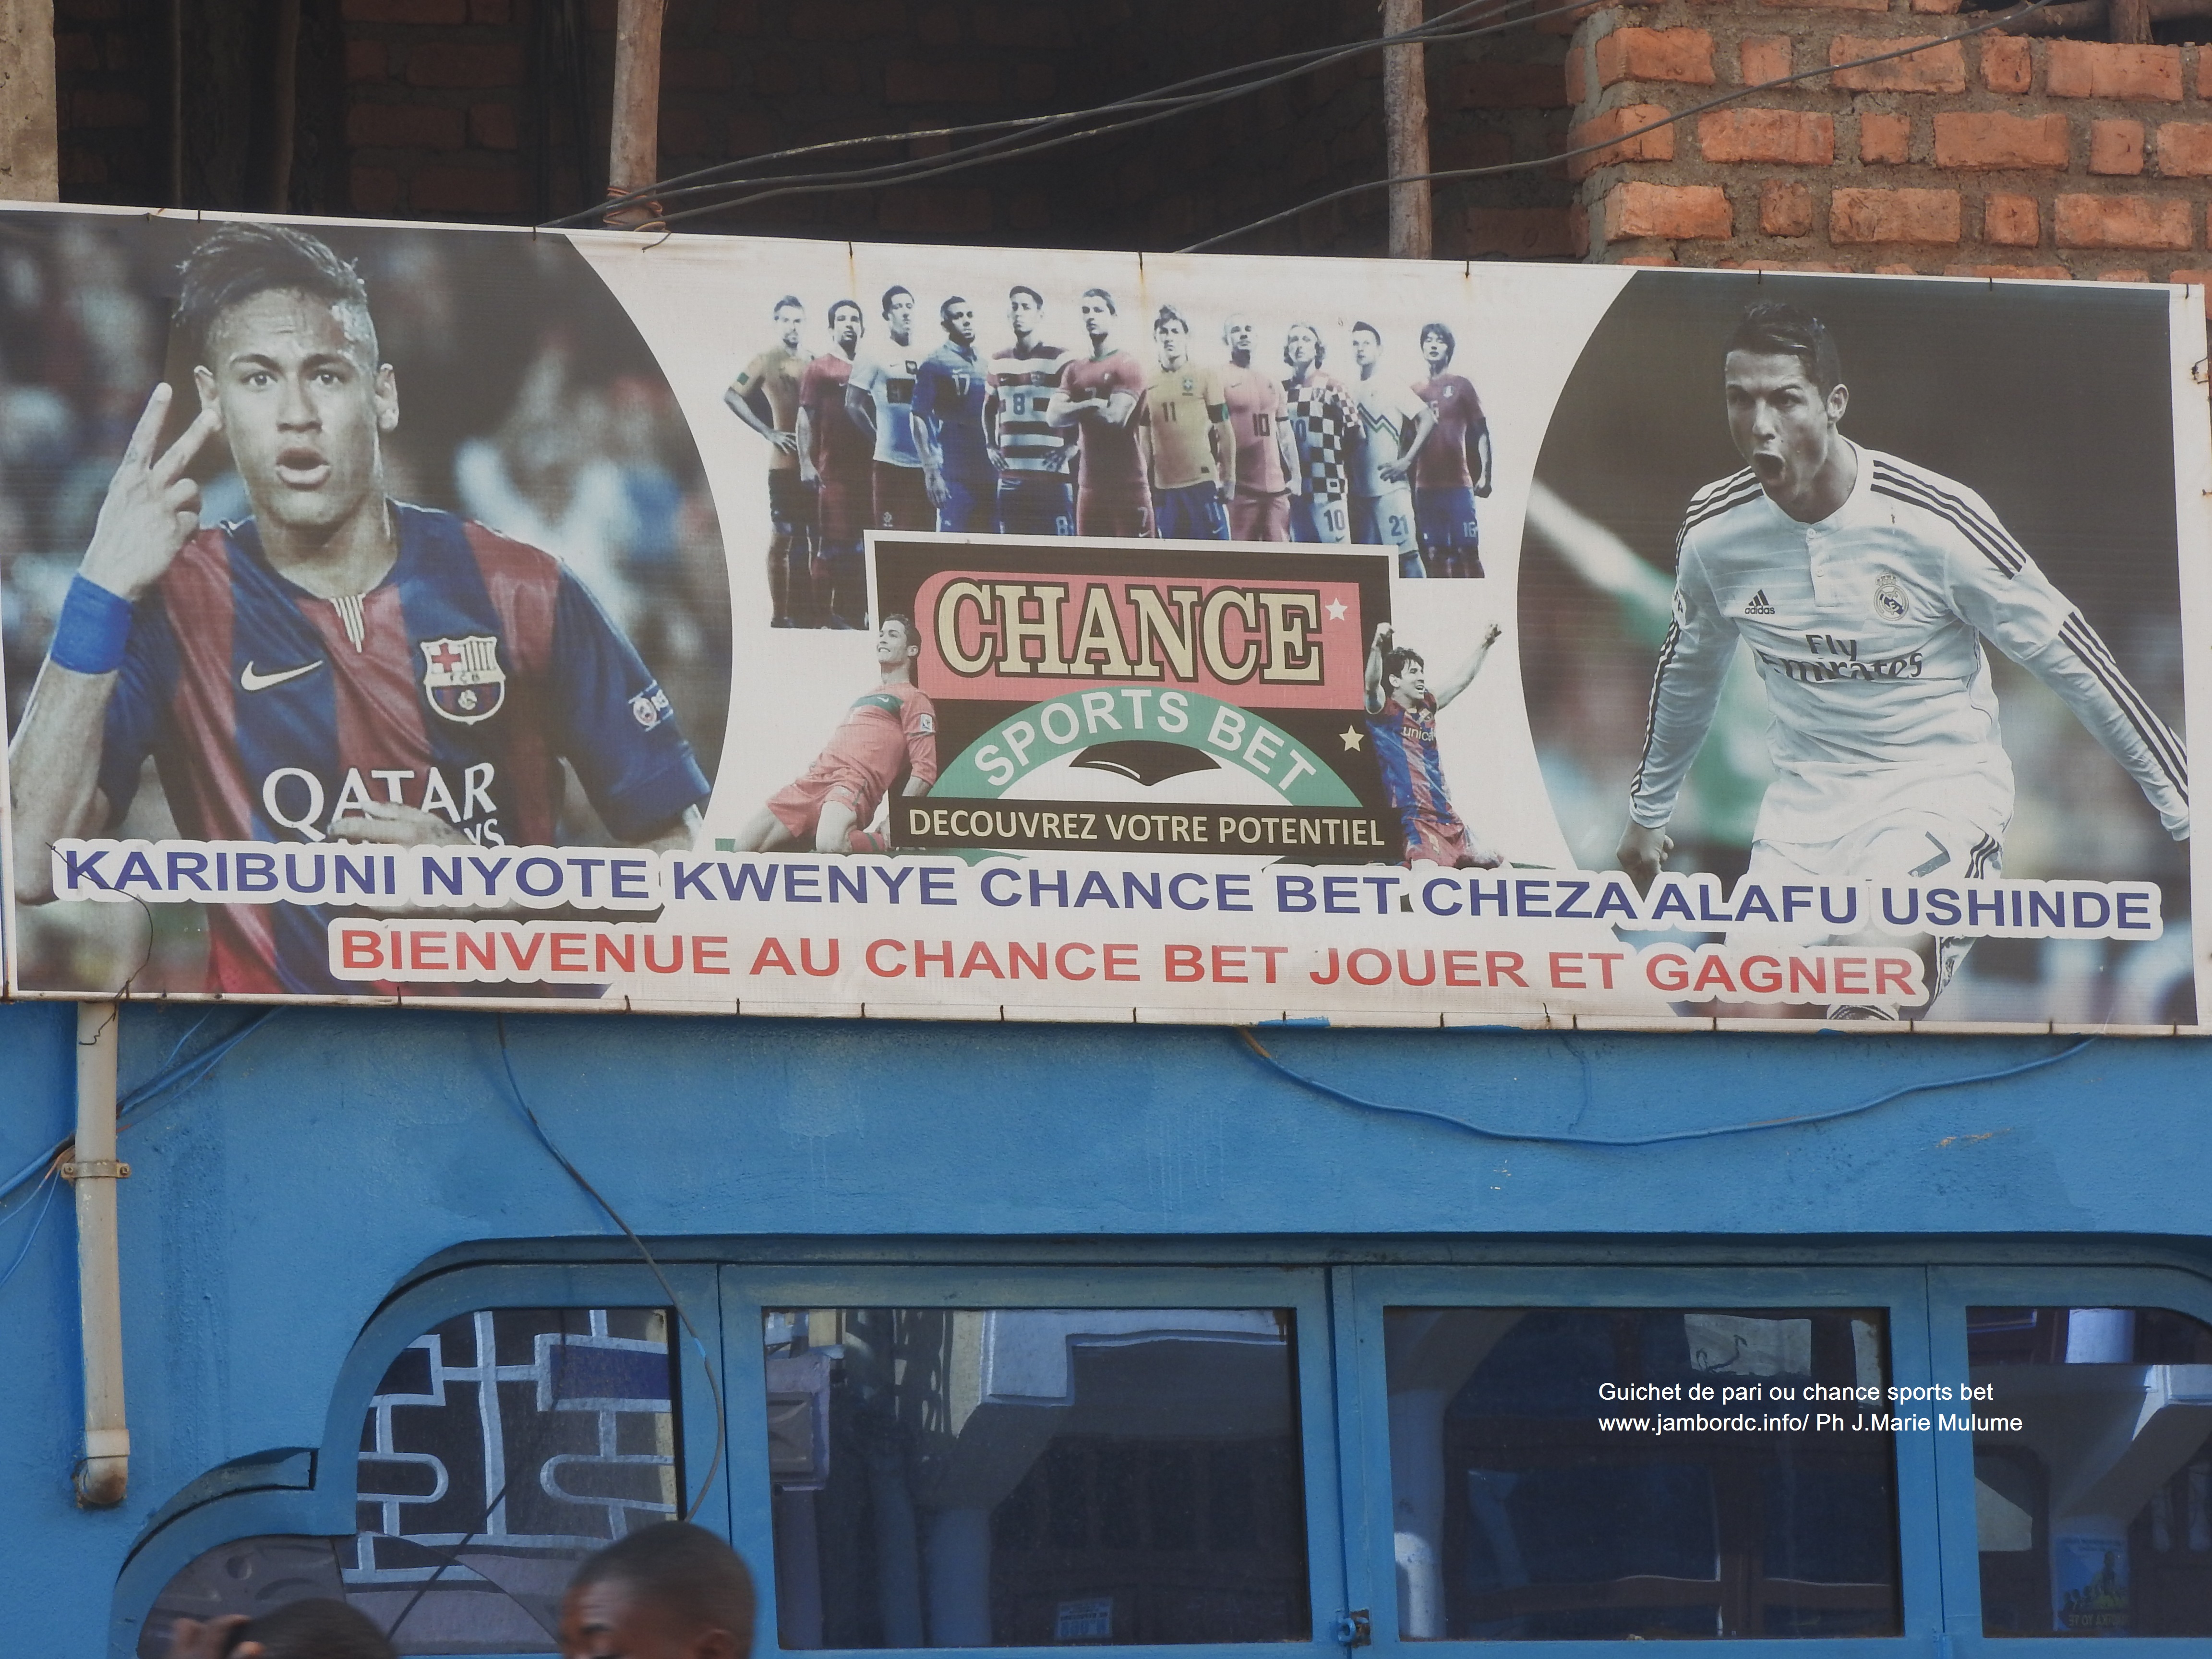 Le pari foot (Chance sports bet) : Un gain pour les familles à Bukavu ?